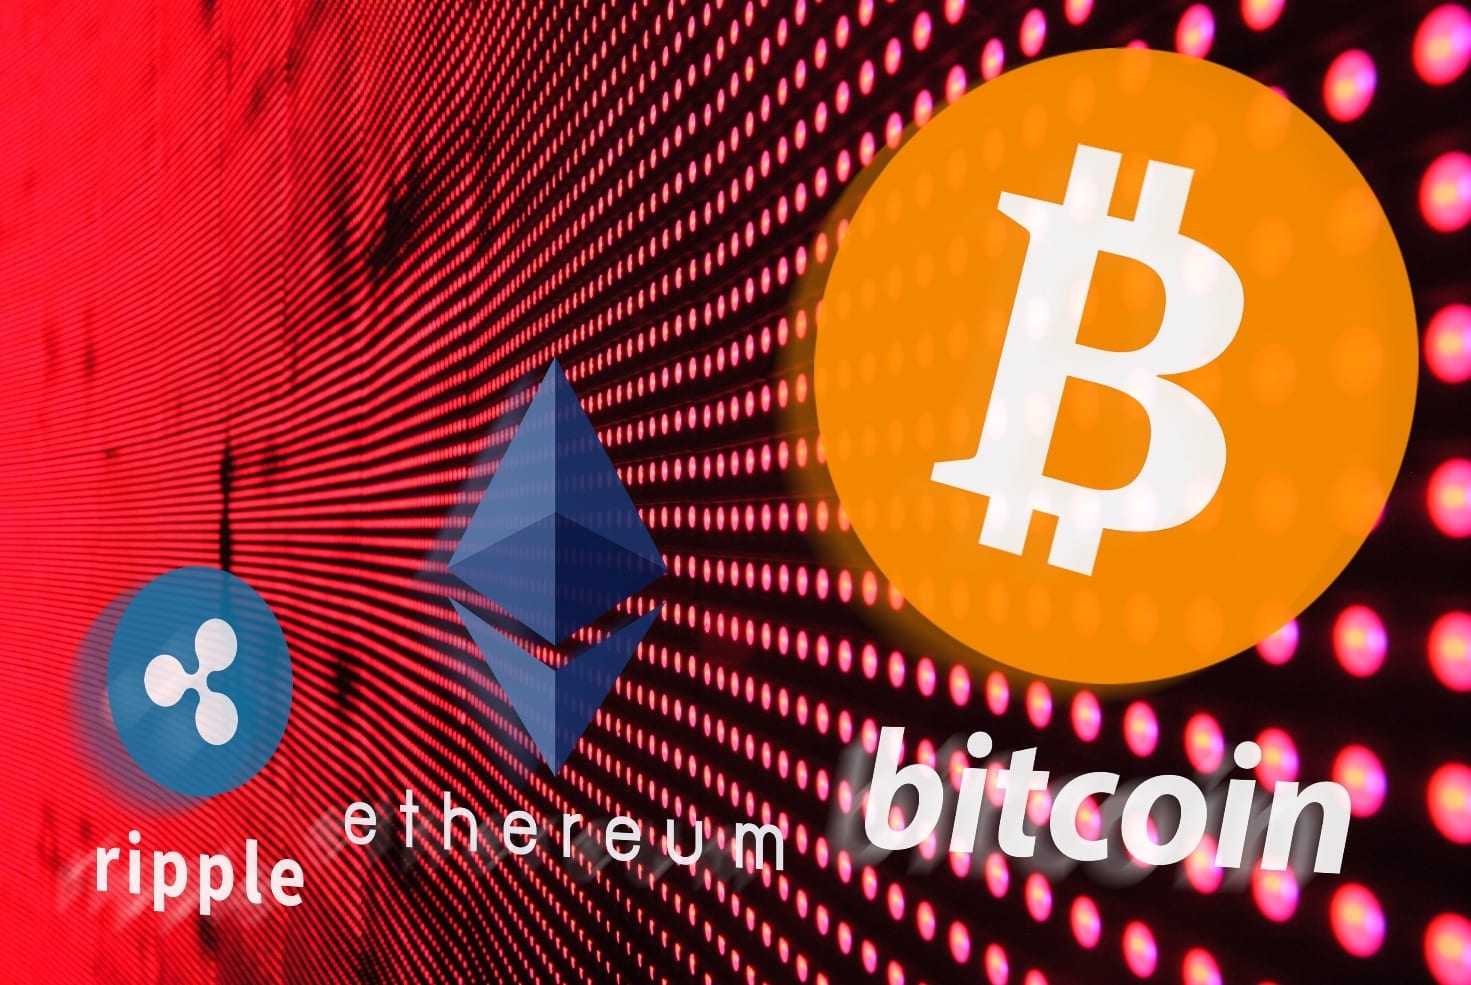 Bitcoin Ethereum Ripple Crypto-Monnaies Blockchain